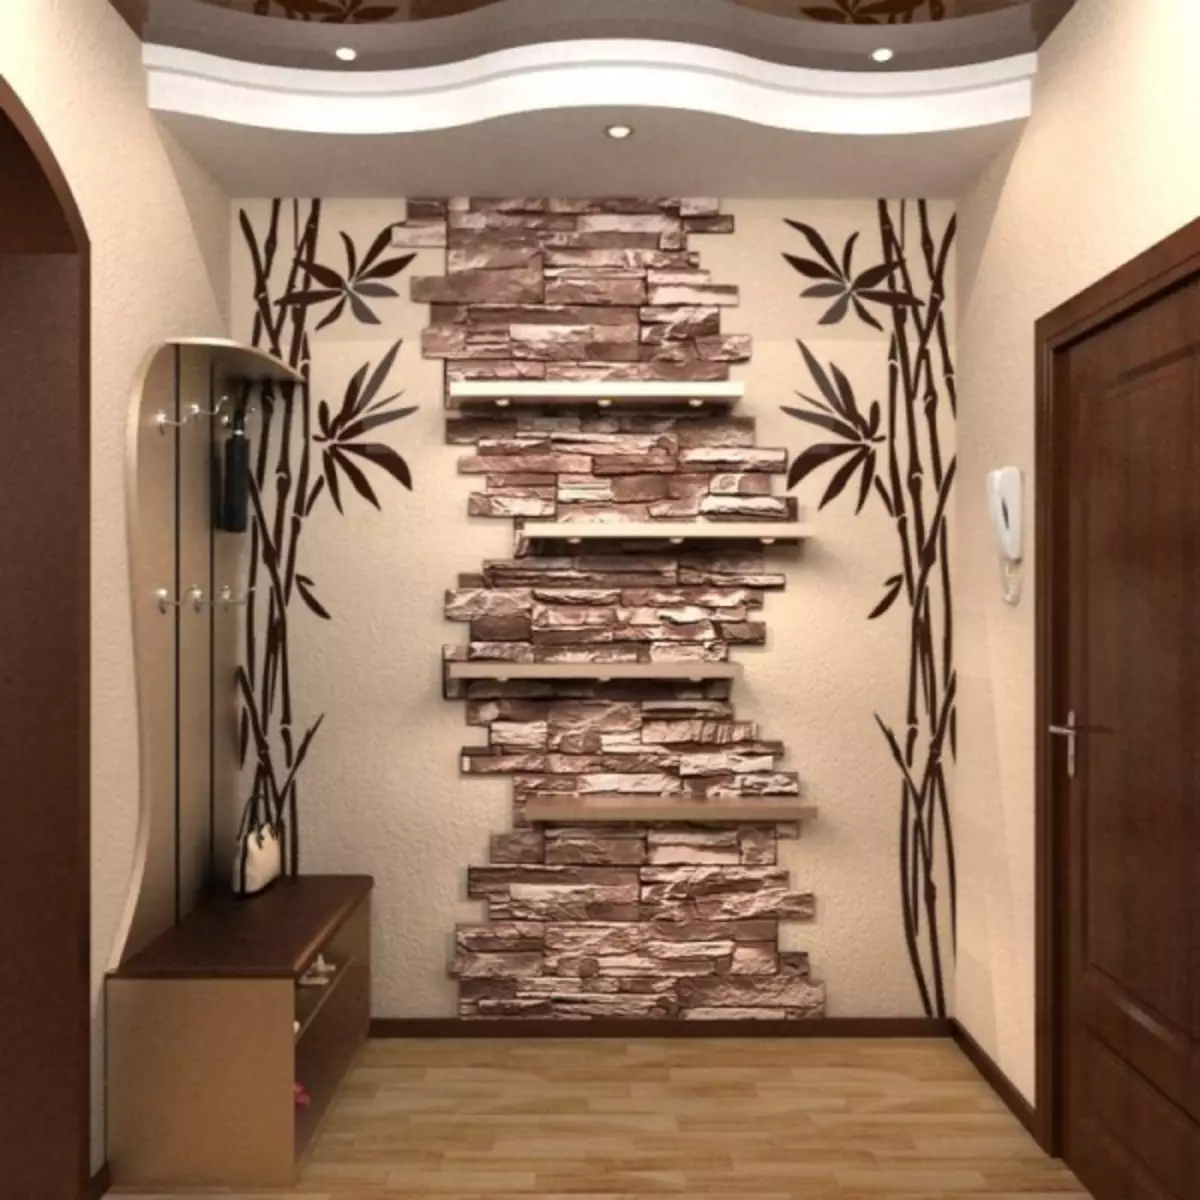 Φινίρισμα διάδρομο με διακοσμητική πέτρα και ταπετσαρία φωτογραφία: ταπετσαρία για πέτρα, τούβλα, βίντεο